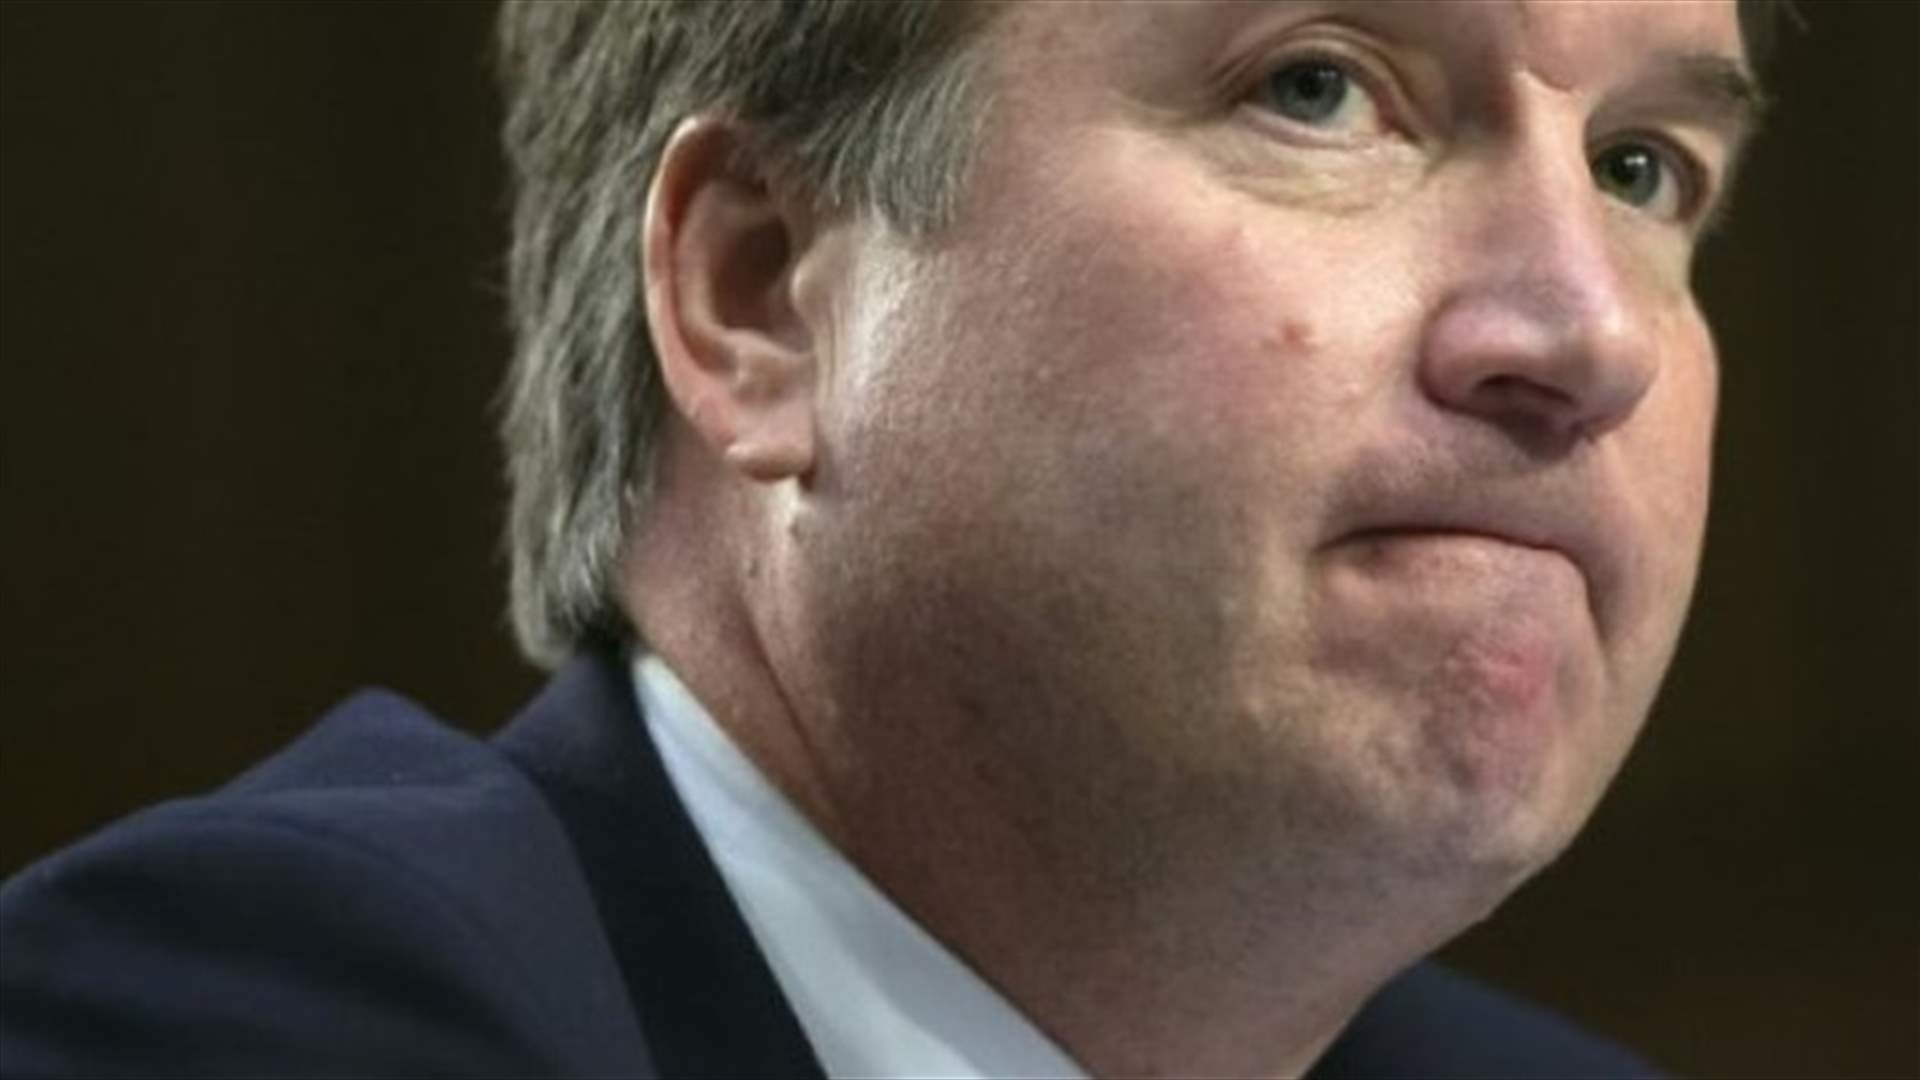 مرشح ترامب للمحكمة العليا يؤكد براءته من الاتهامات باعتداءات جنسية